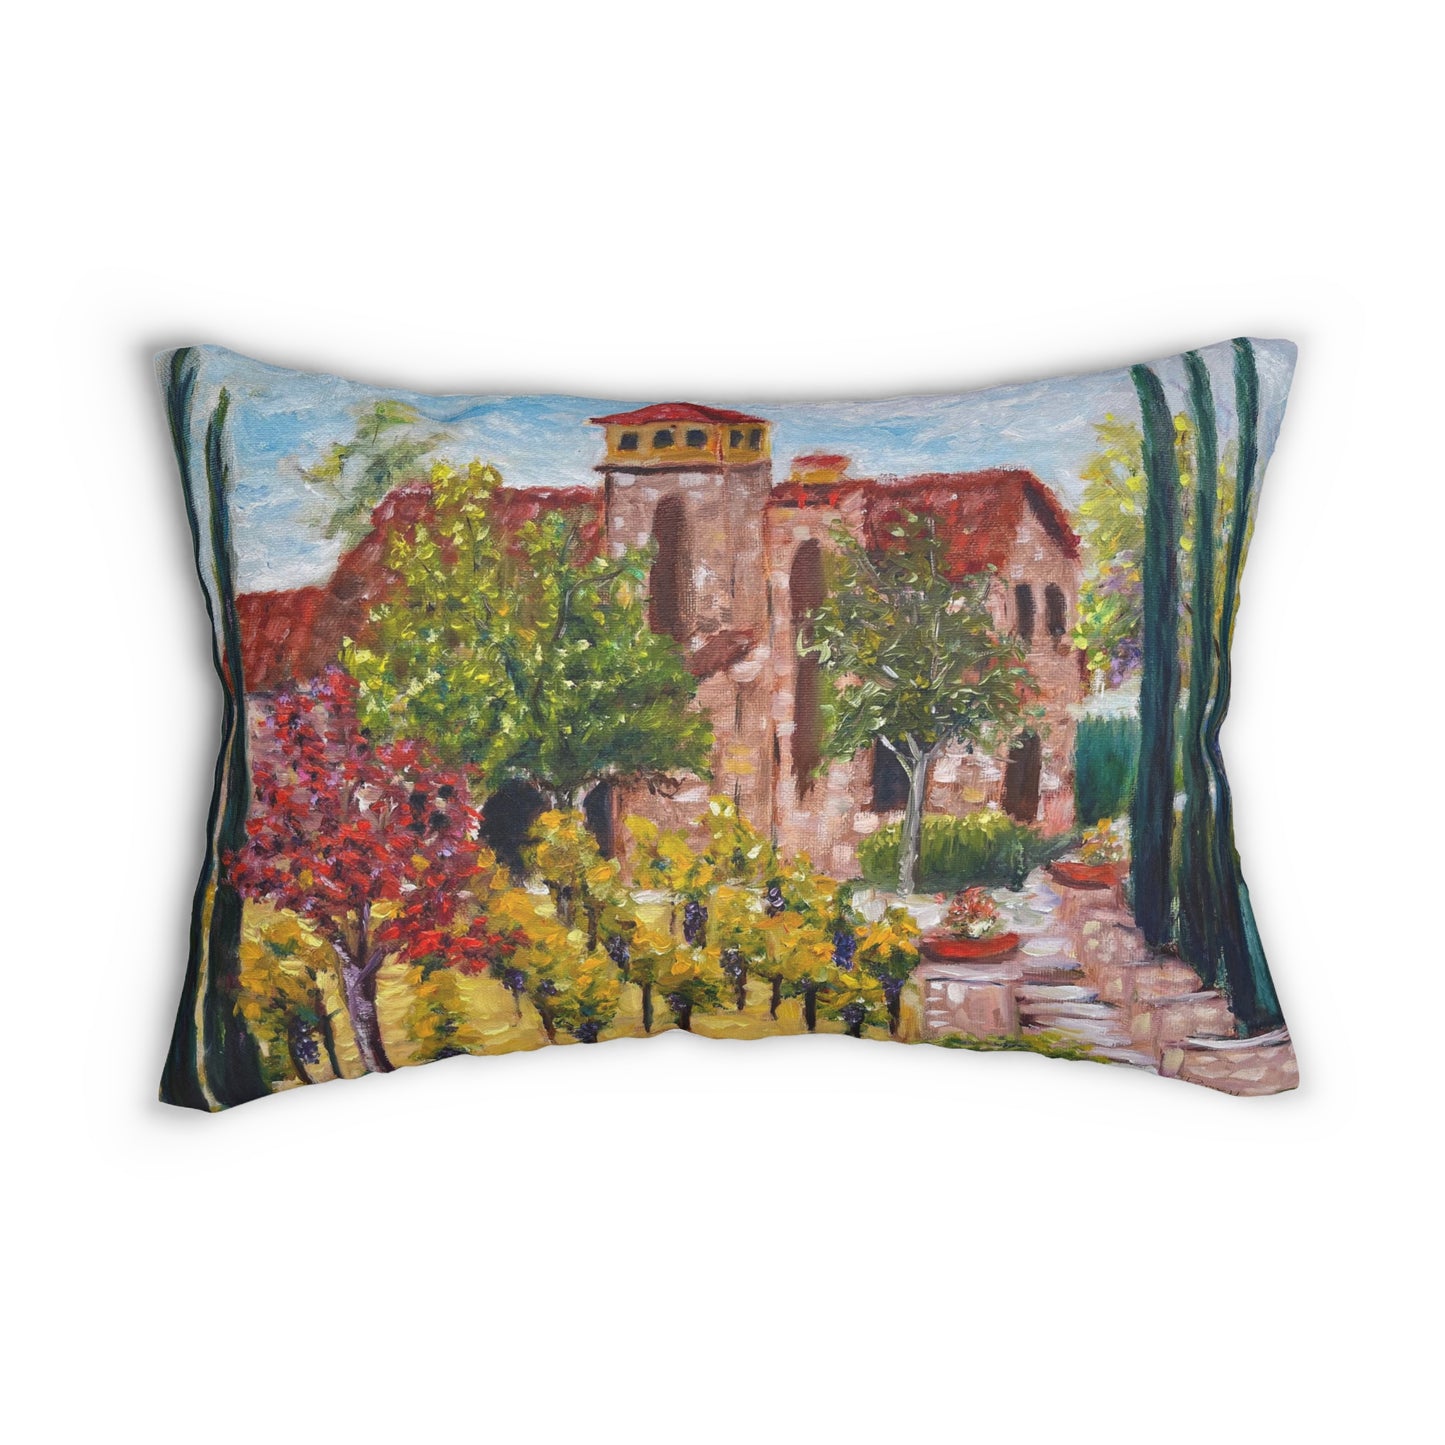 Temecula Lumbar Pillow featuring "Lorimar Winery in Autumn" painting and "Temecula"